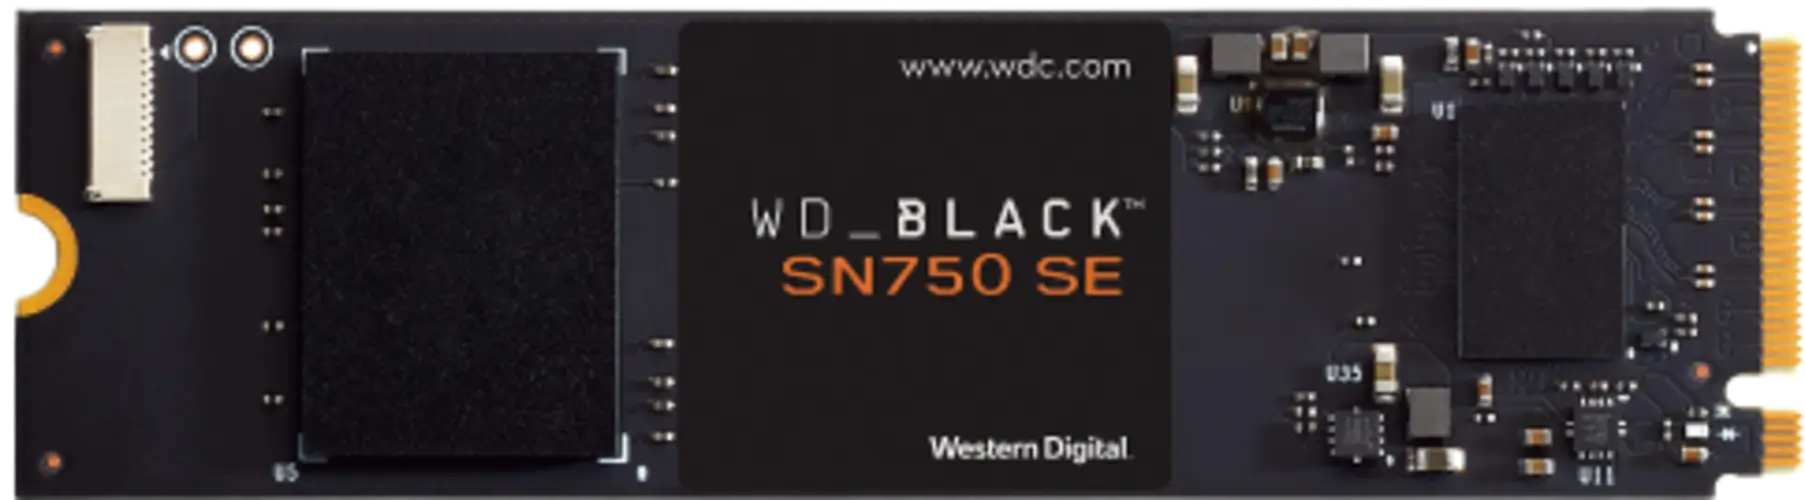 هارد WD_BLACK SN750 SE - واحد تيرا (1TB) 